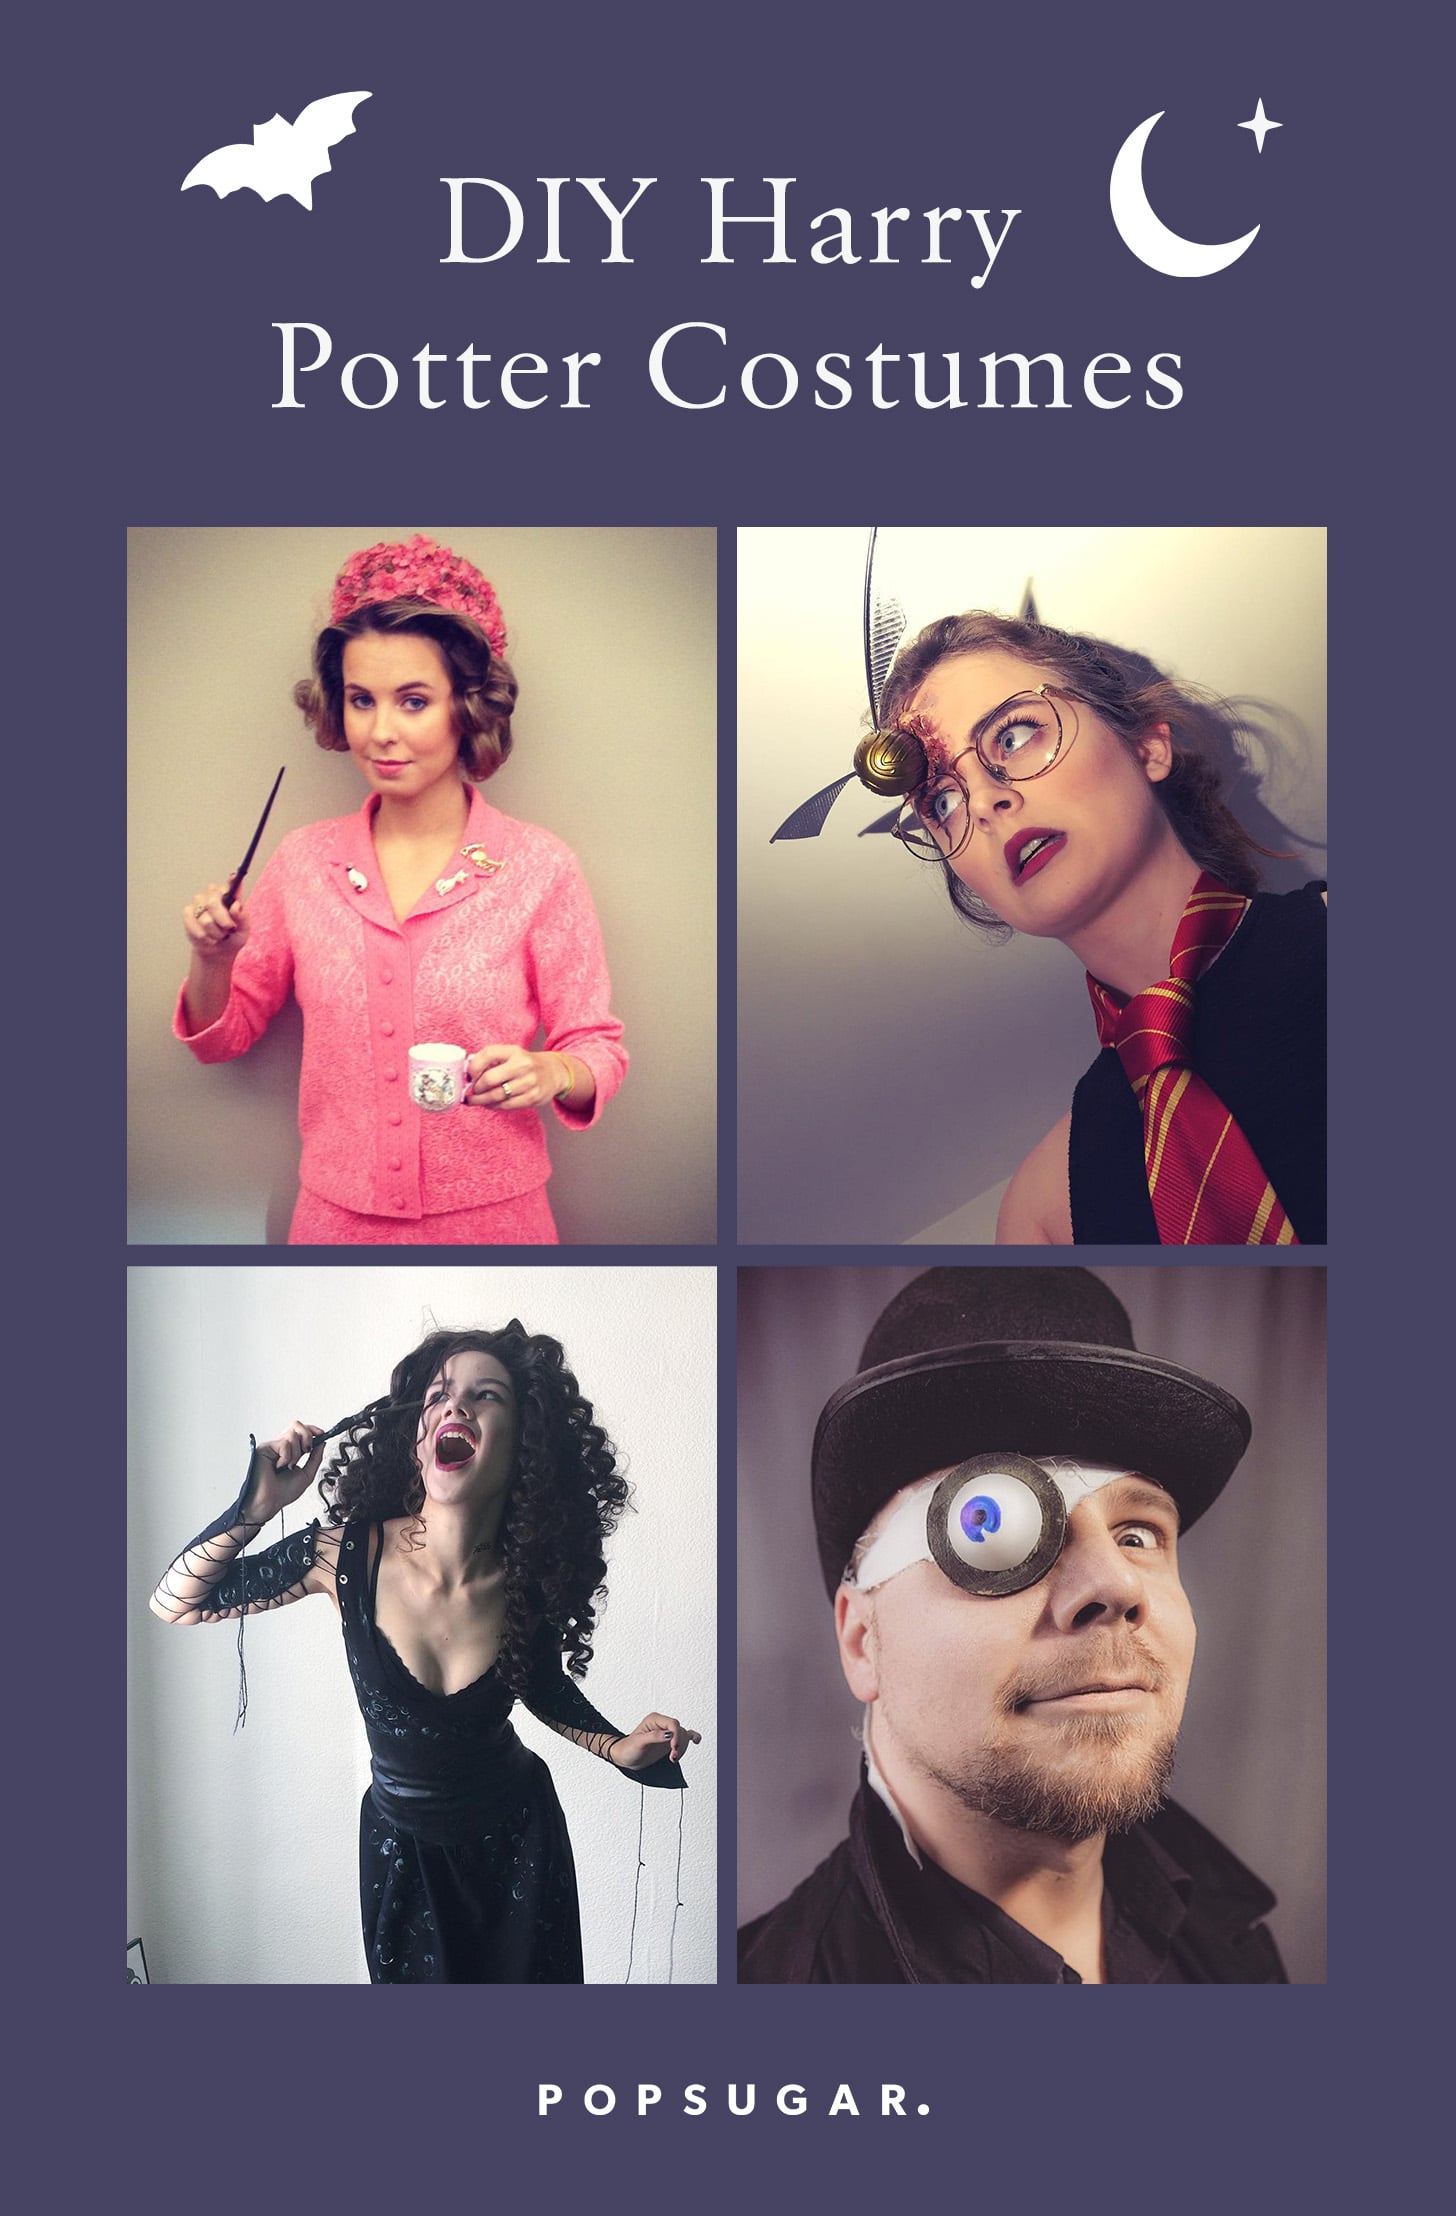 Last Minute Harry Potter Costume Ideas